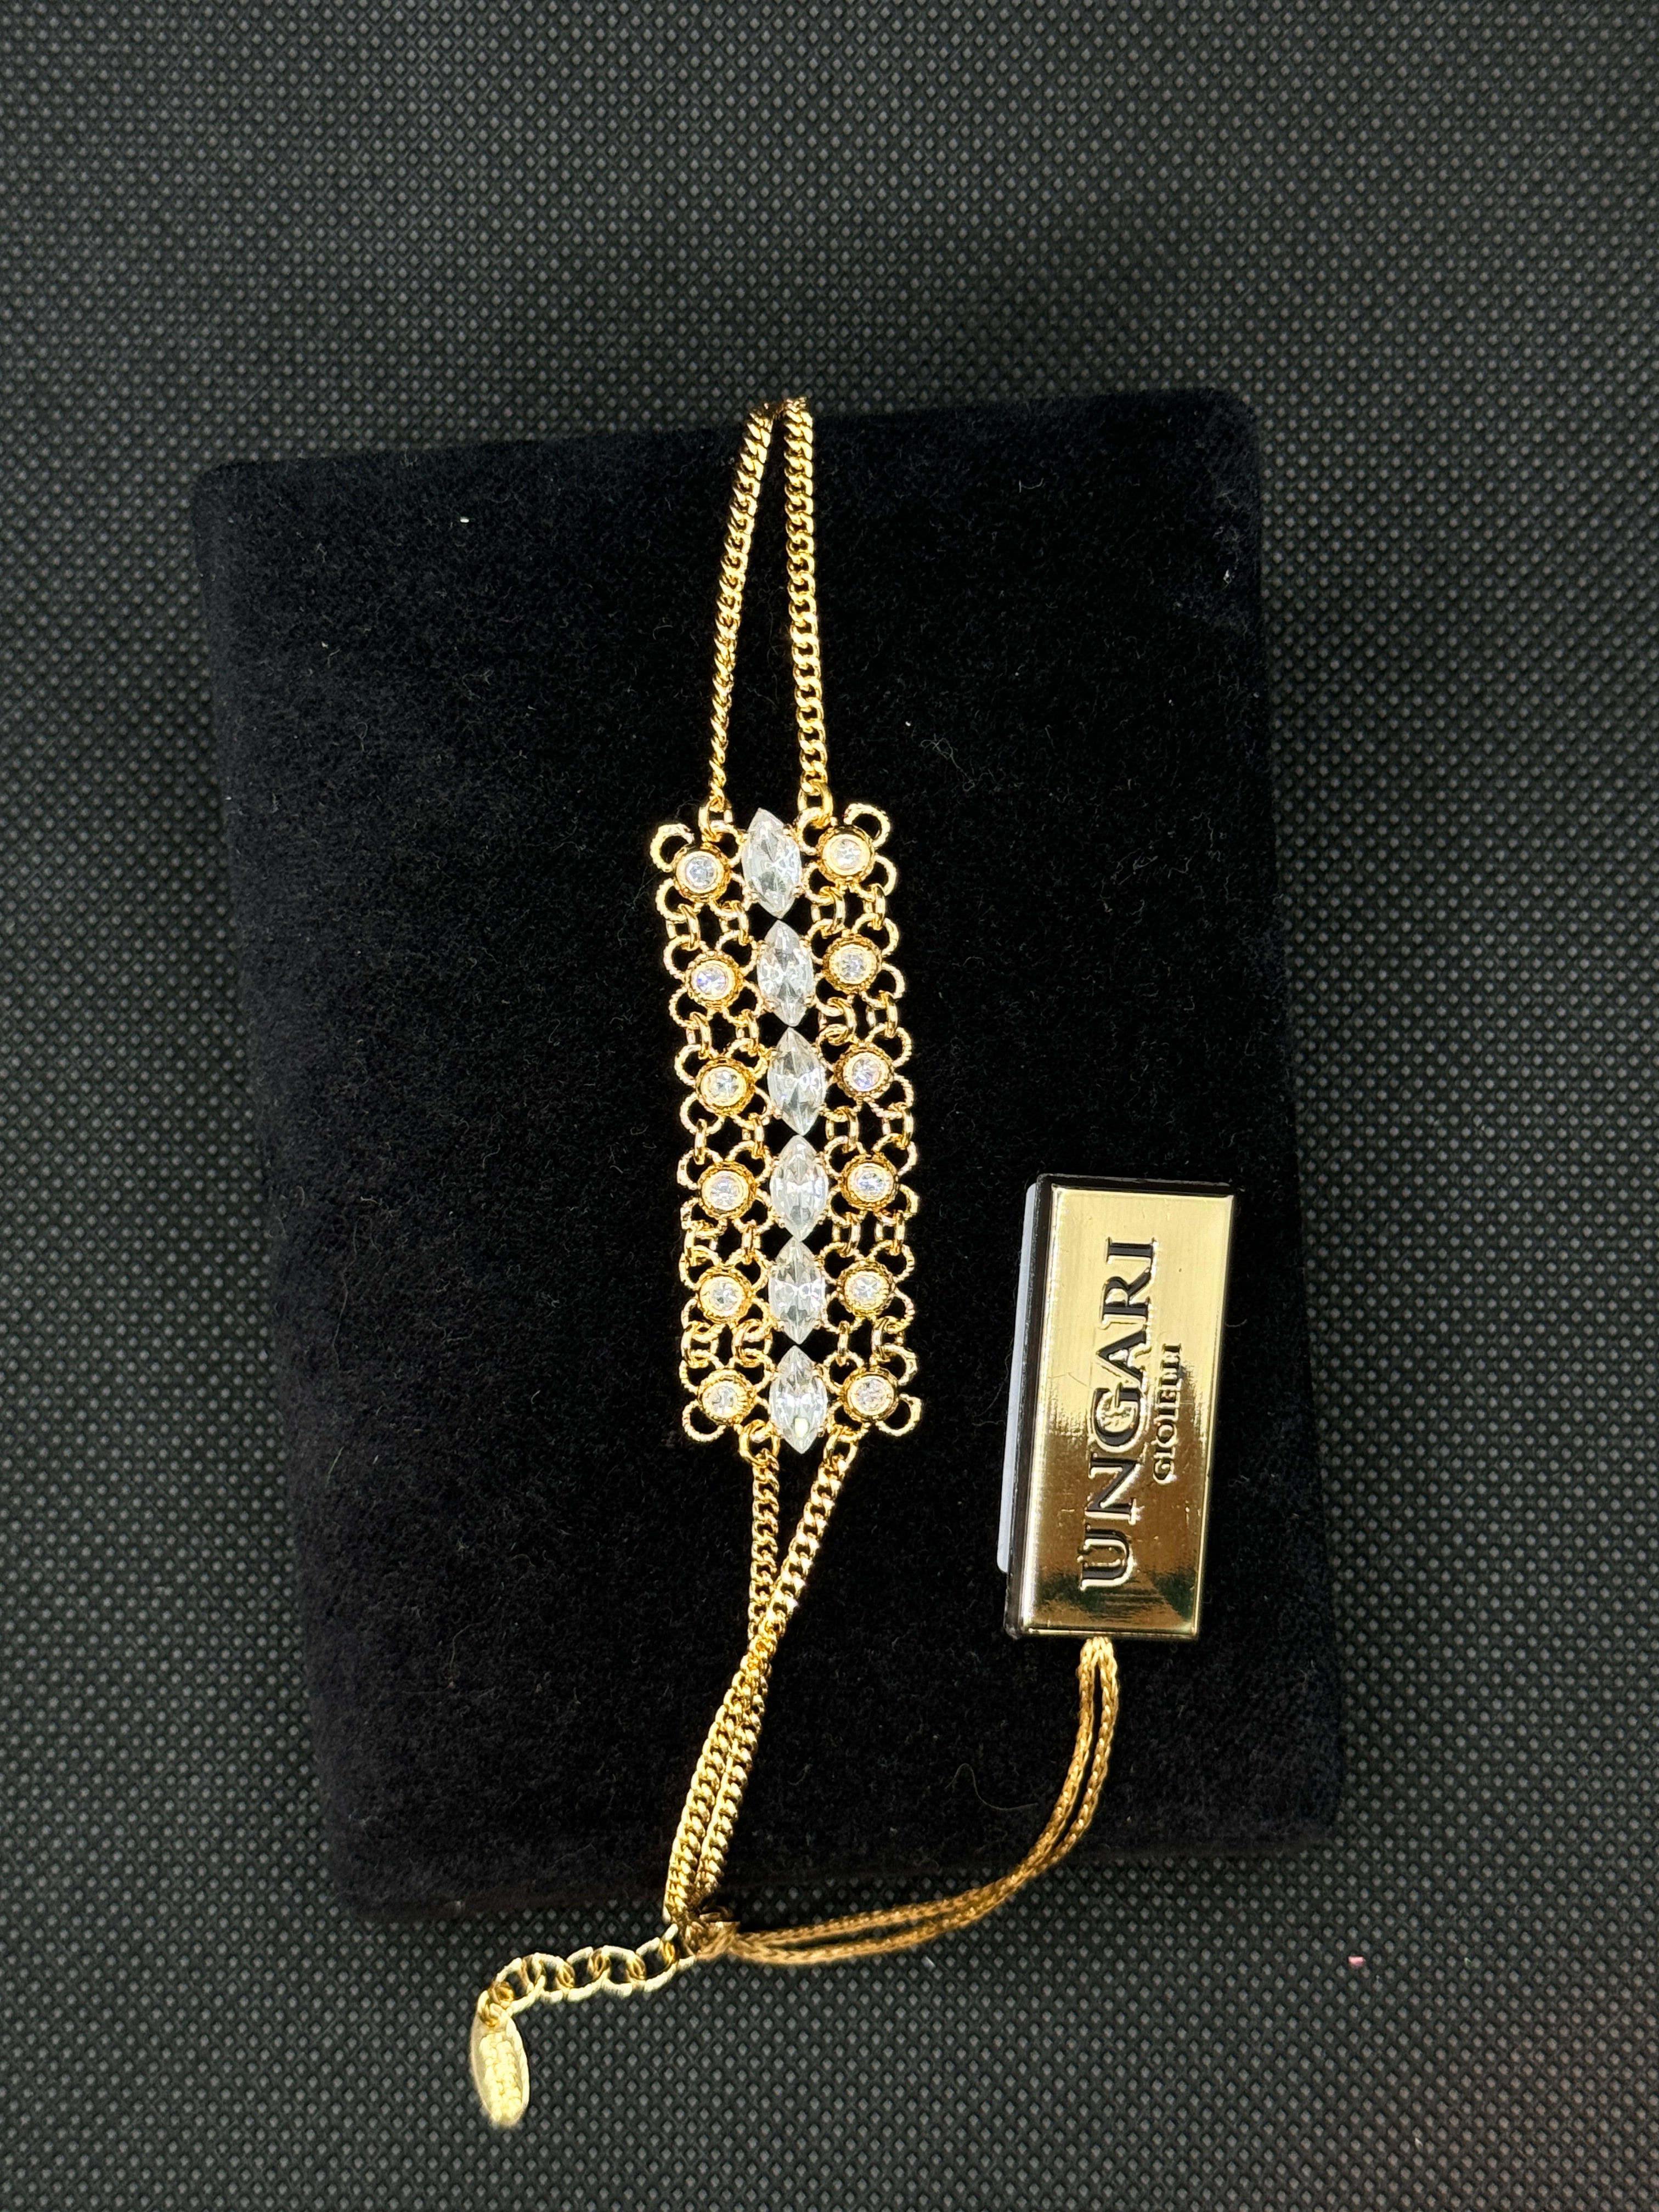 Lorenzo Ungari - Bracelet in gilded bronze and zircons - CAMIRE BR 003